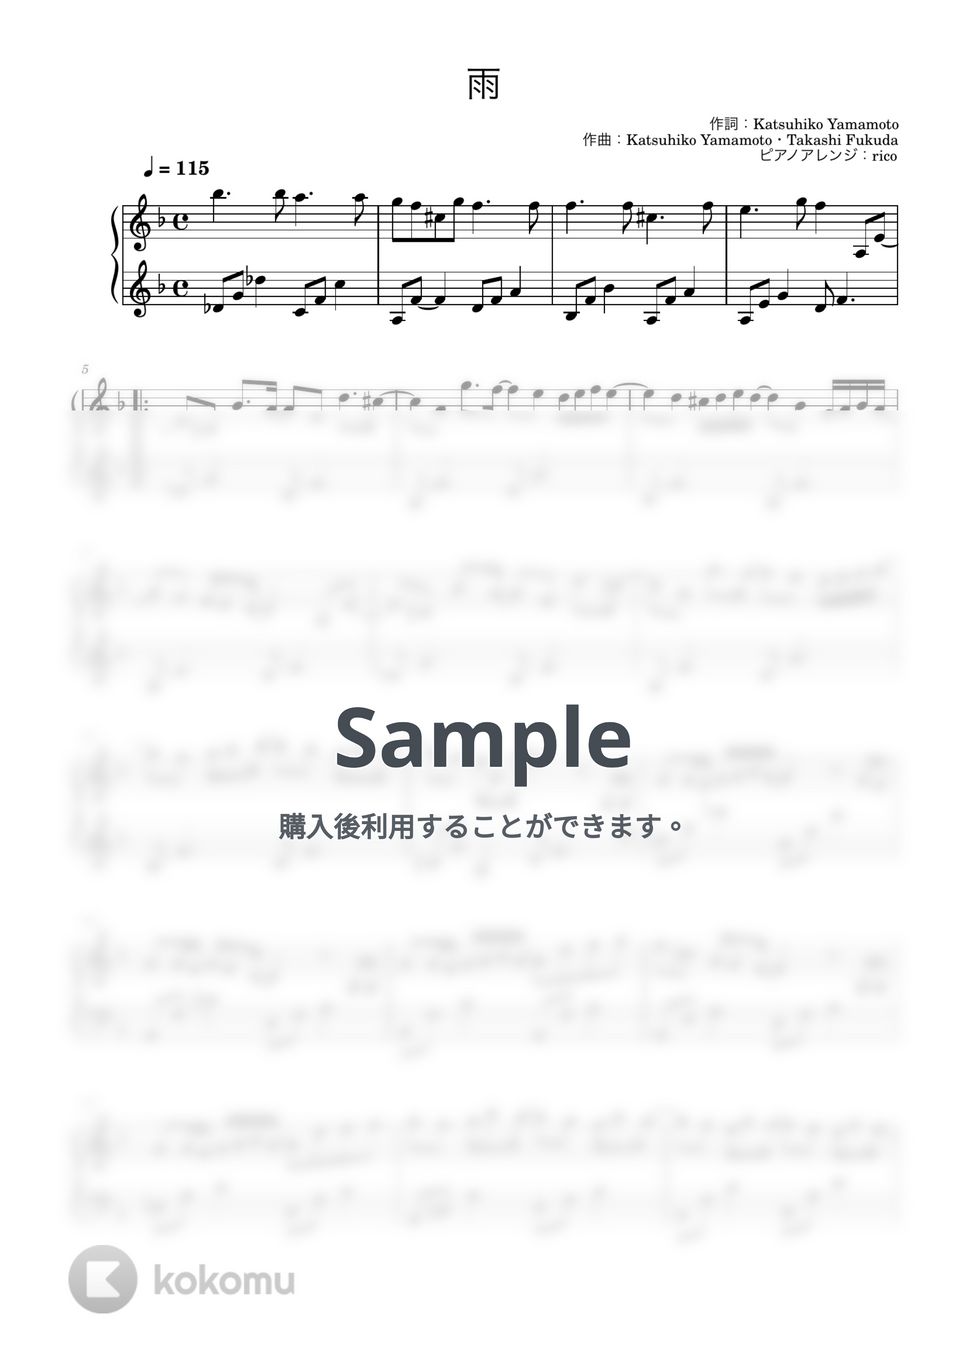 SixTONES - 雨 (ピアノソロ) by rico